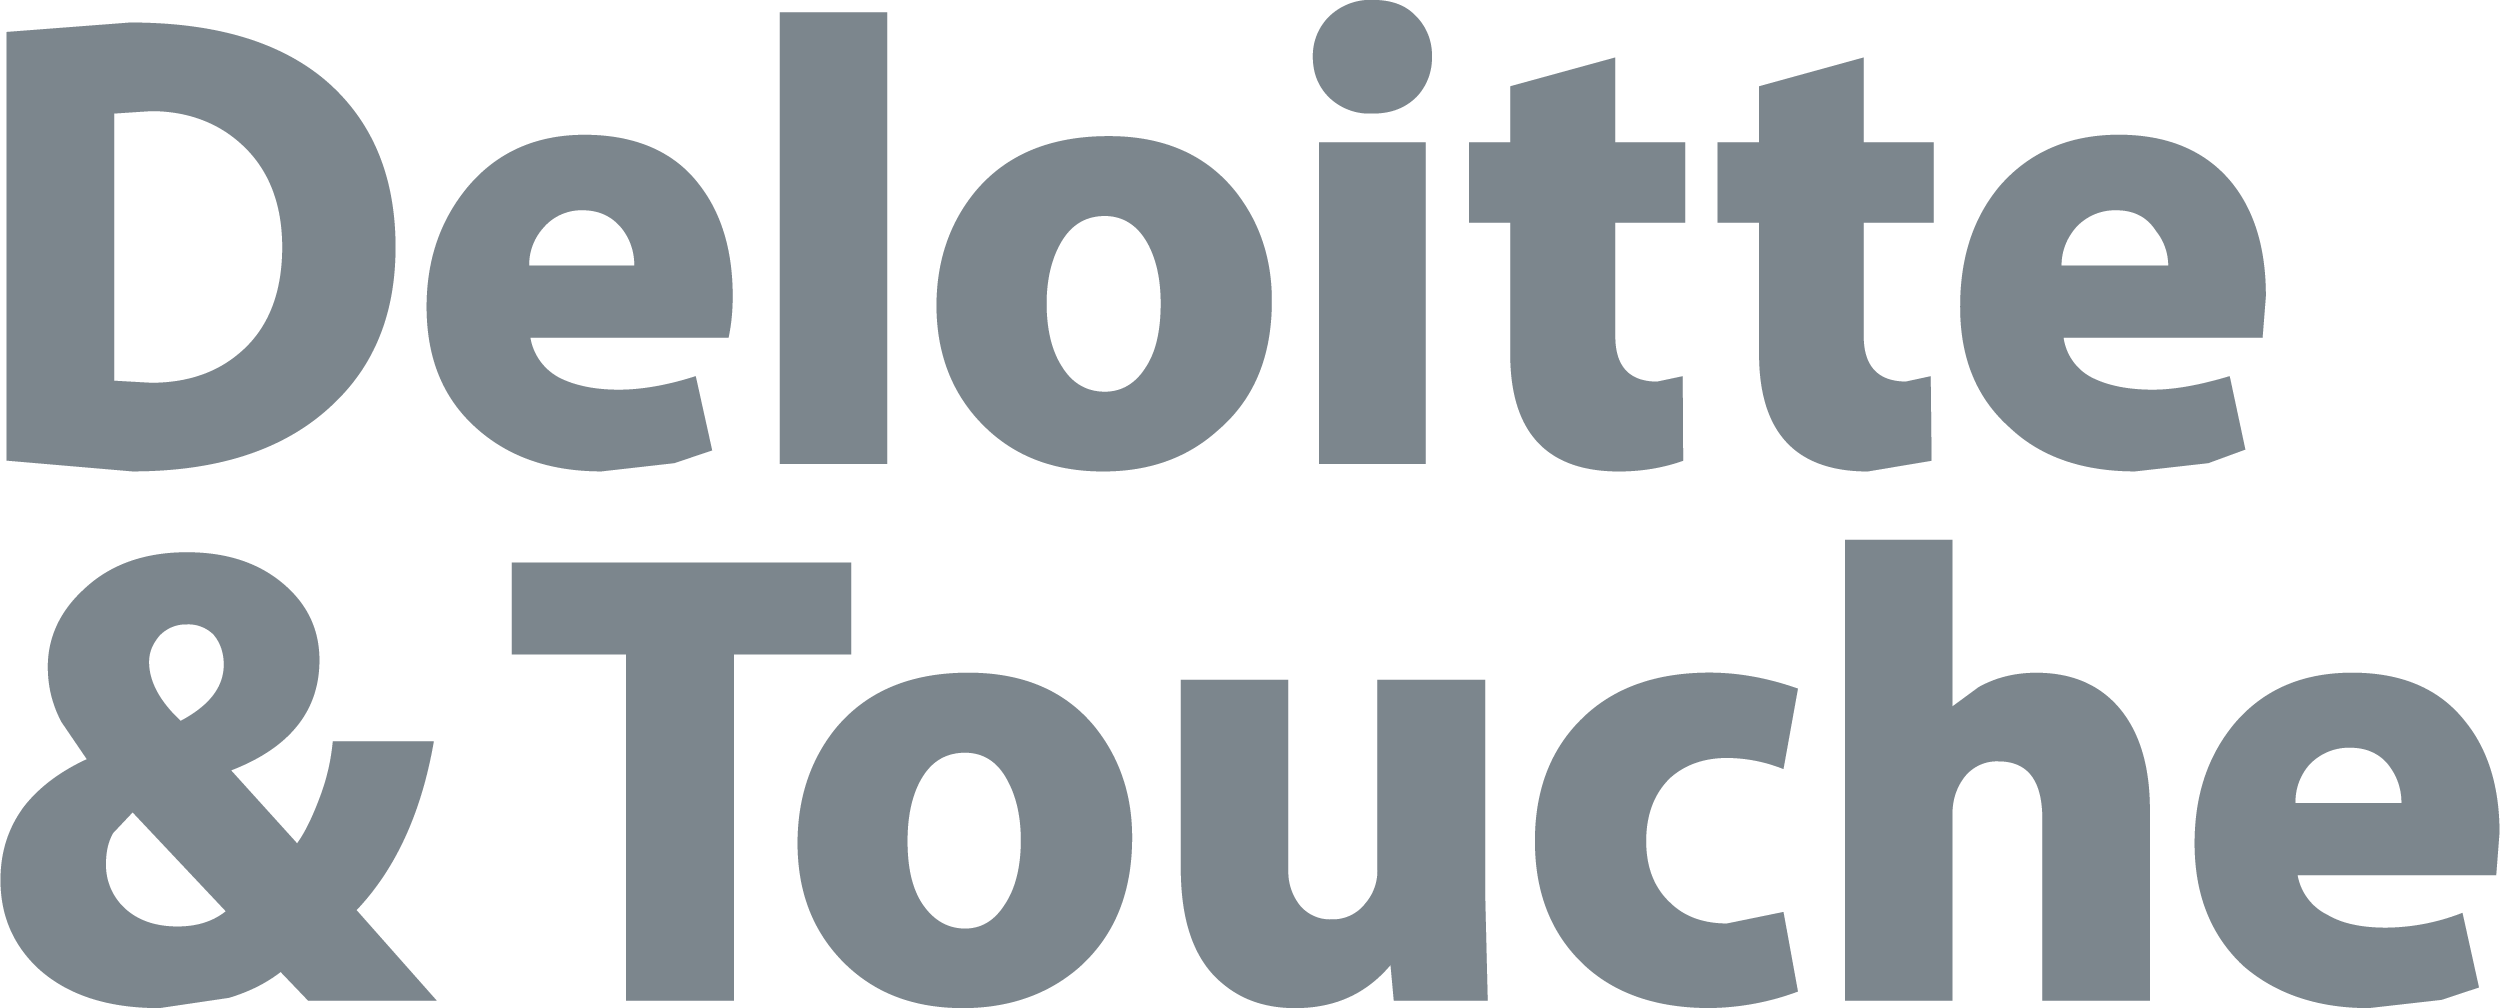 Deloitte & Touche logo